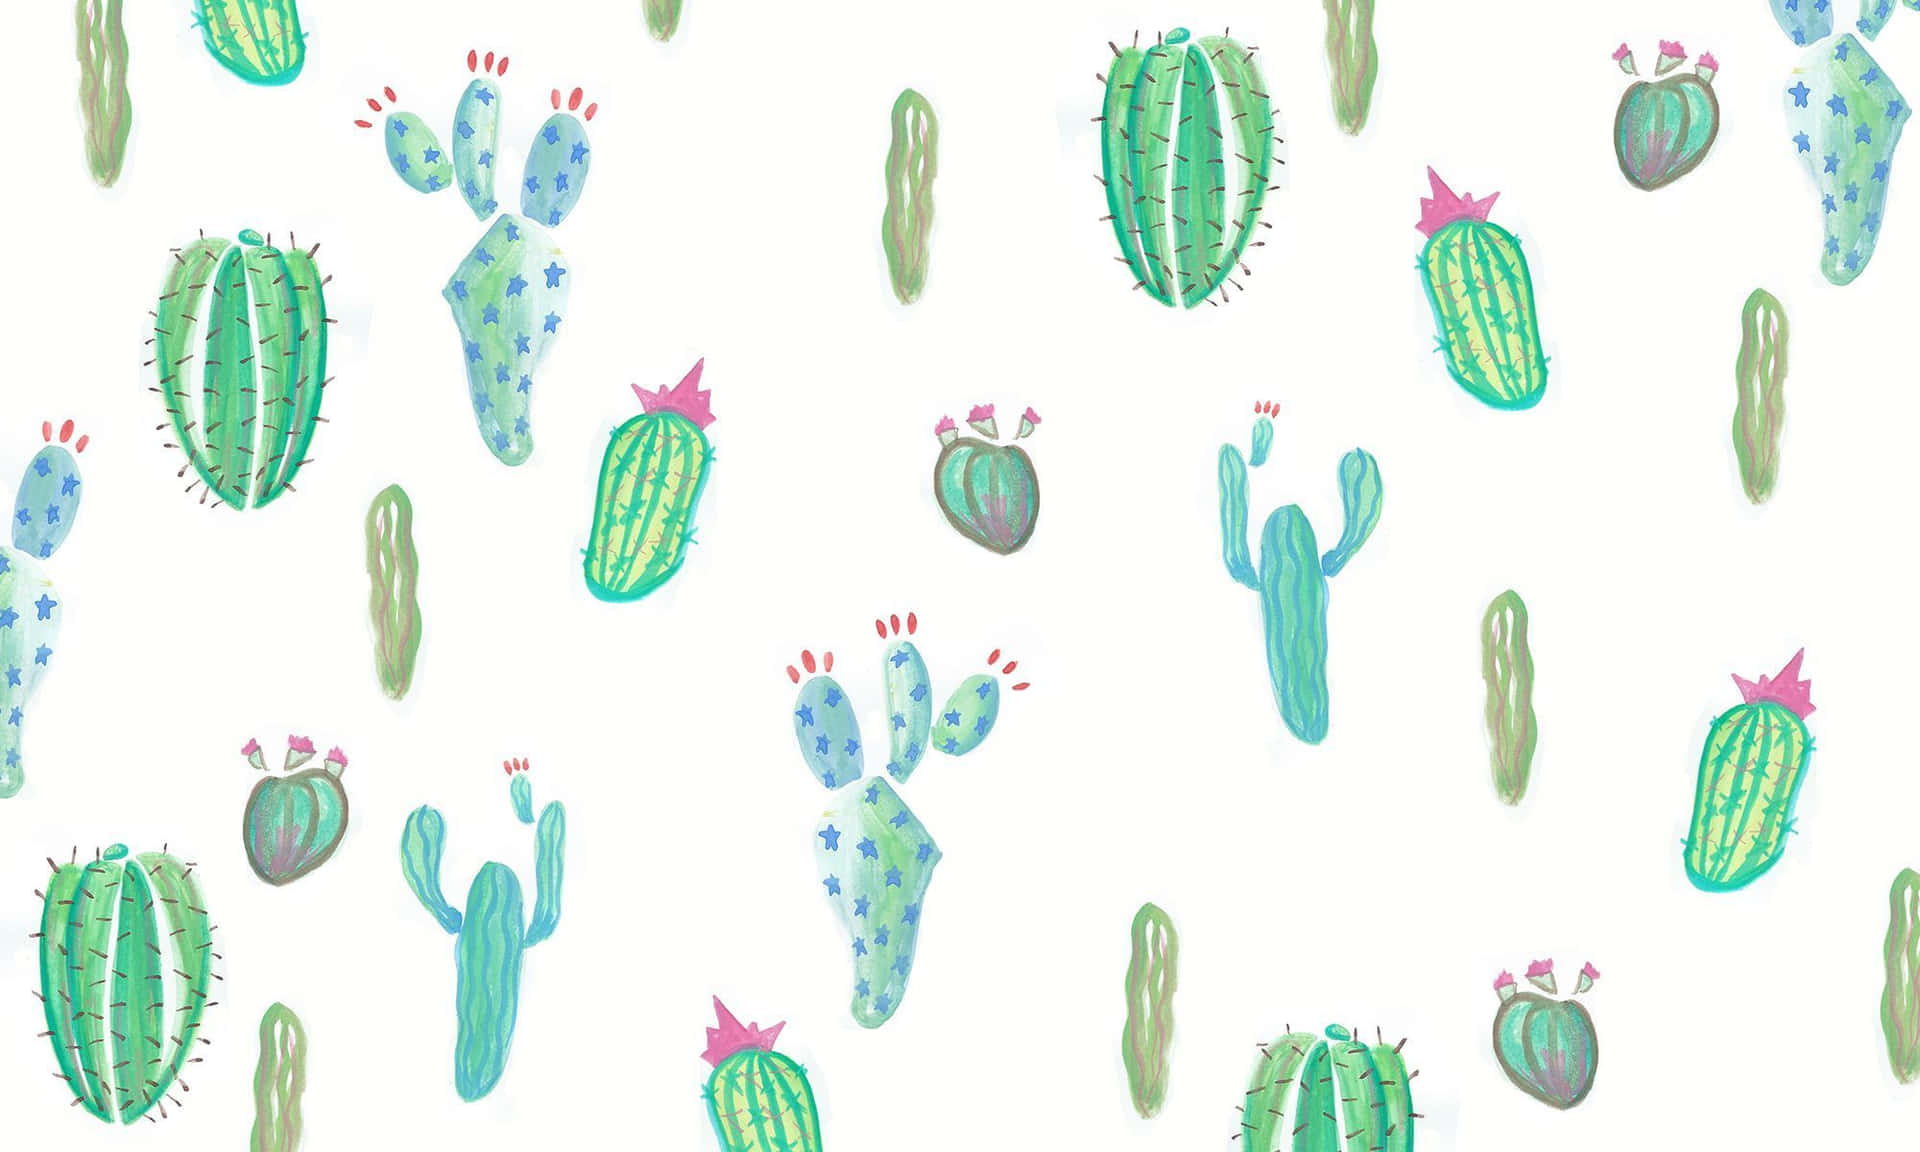 Einmuster Von Kaktuspflanzen Auf Einem Weißen Hintergrund.